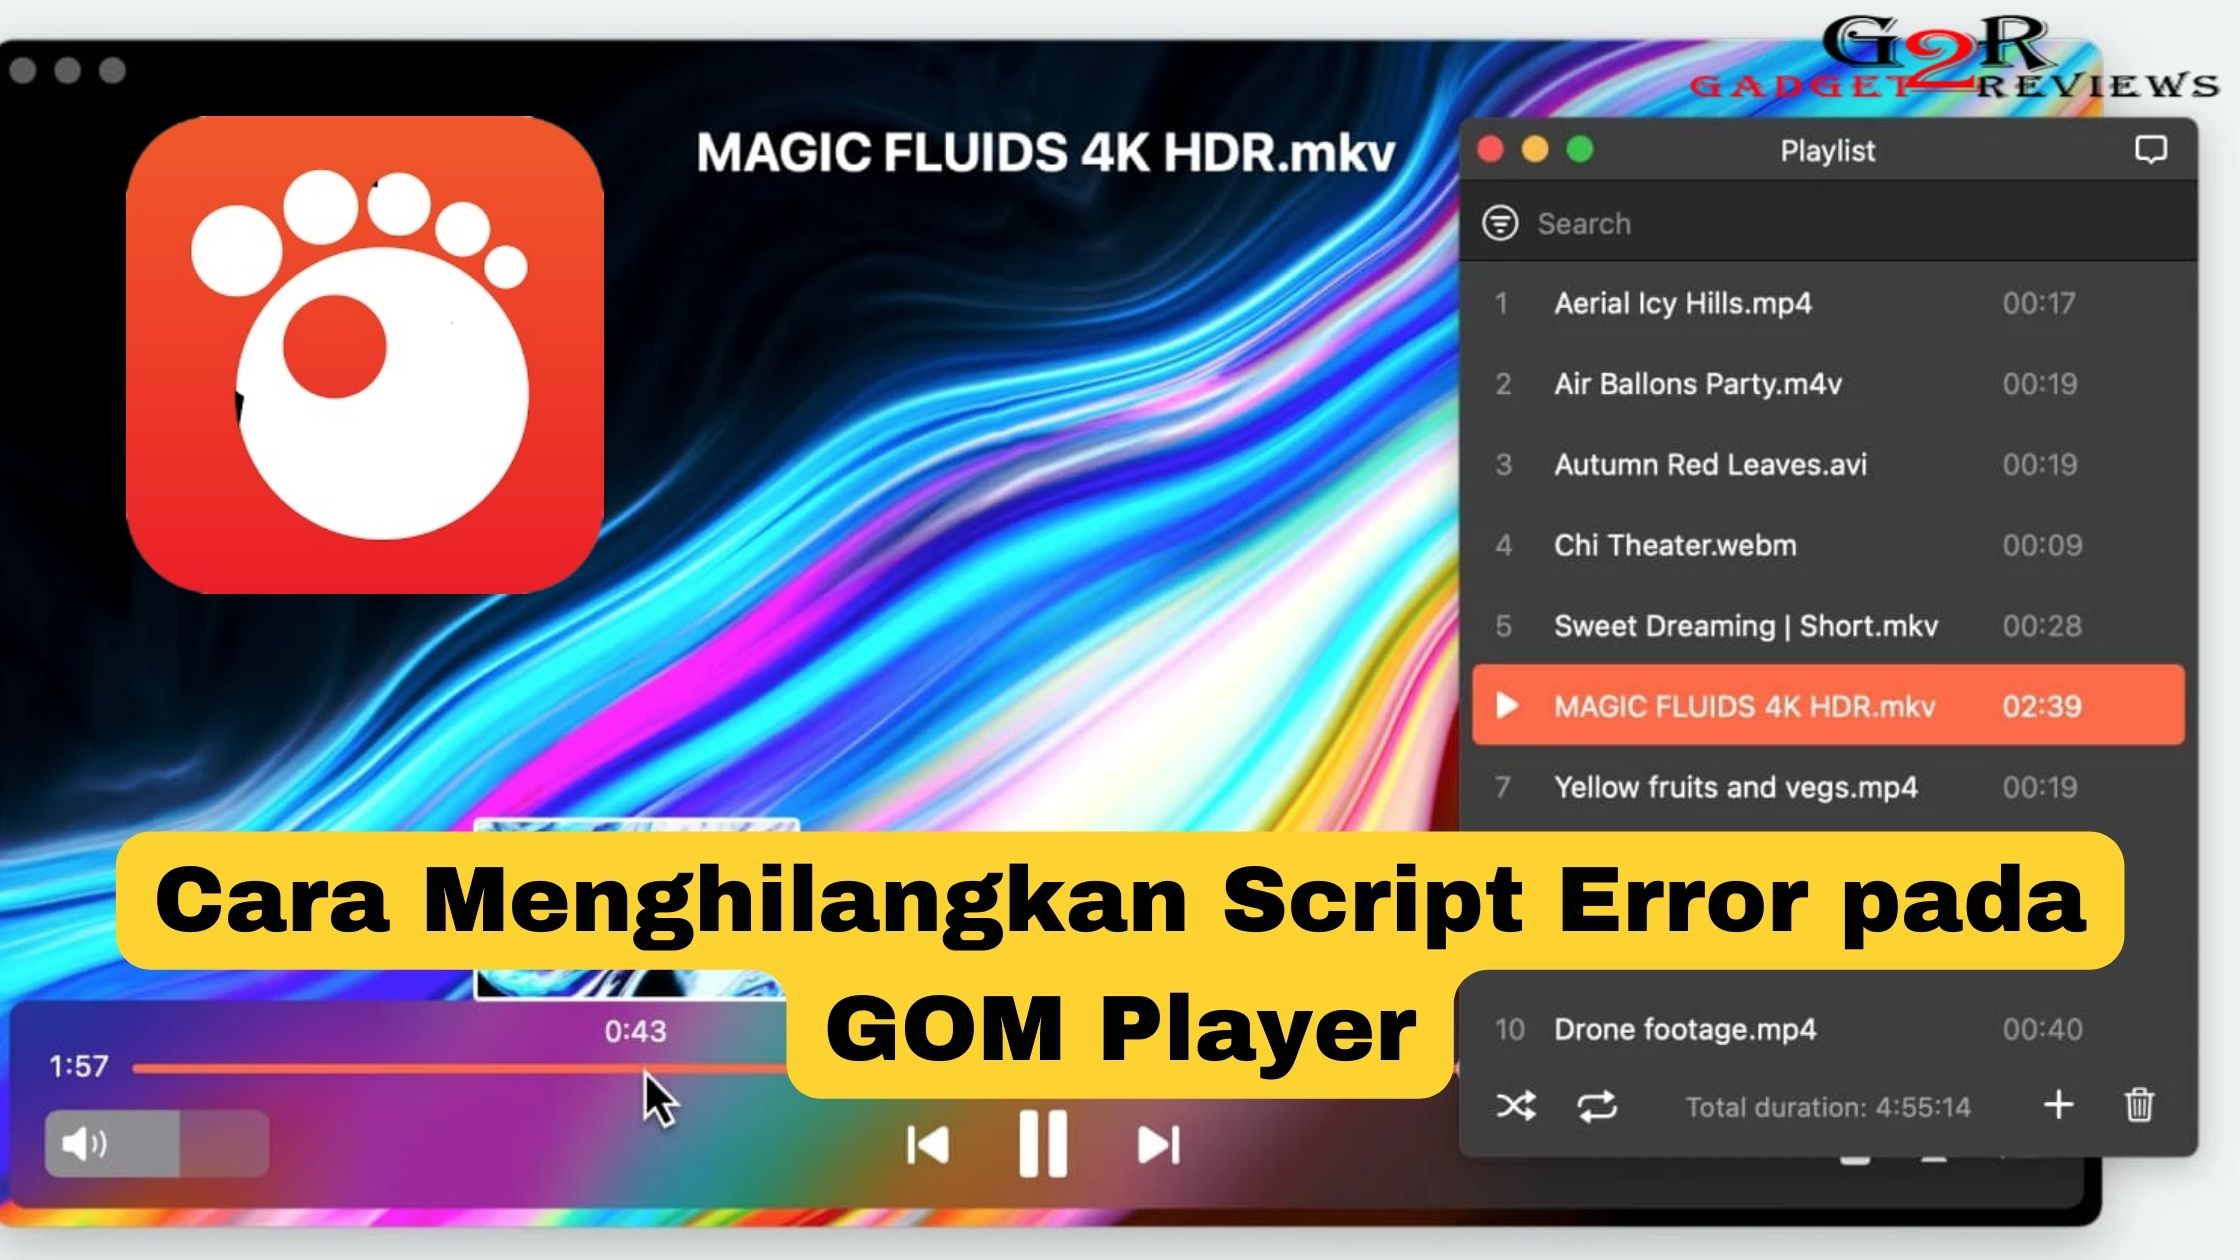 Cara Menghilangkan Script Error pada GOM Player